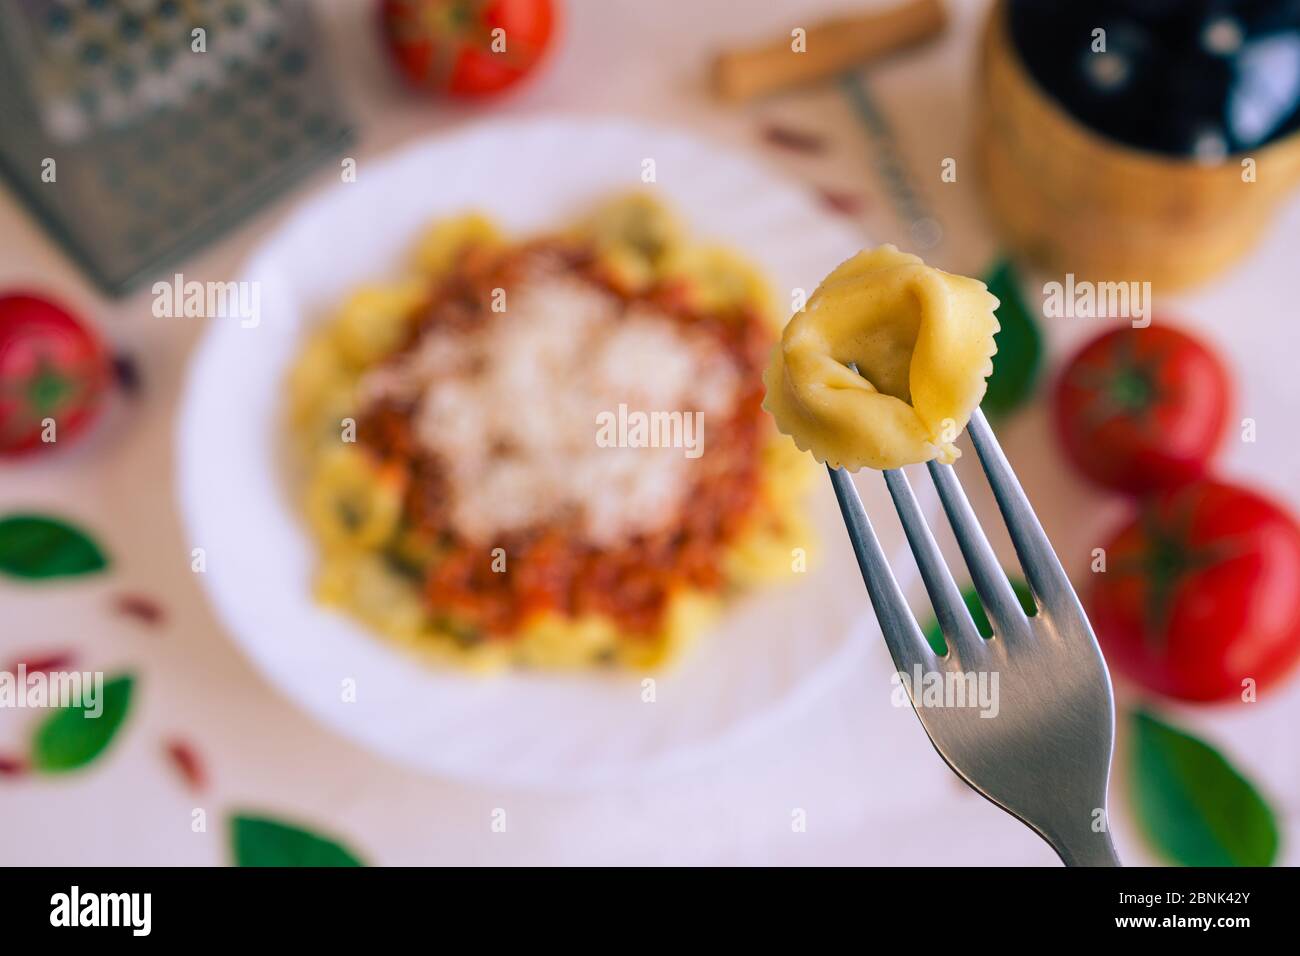 Un cappelletti en un tenedor y en el fondo una mesa con comida típica italiana Foto de stock